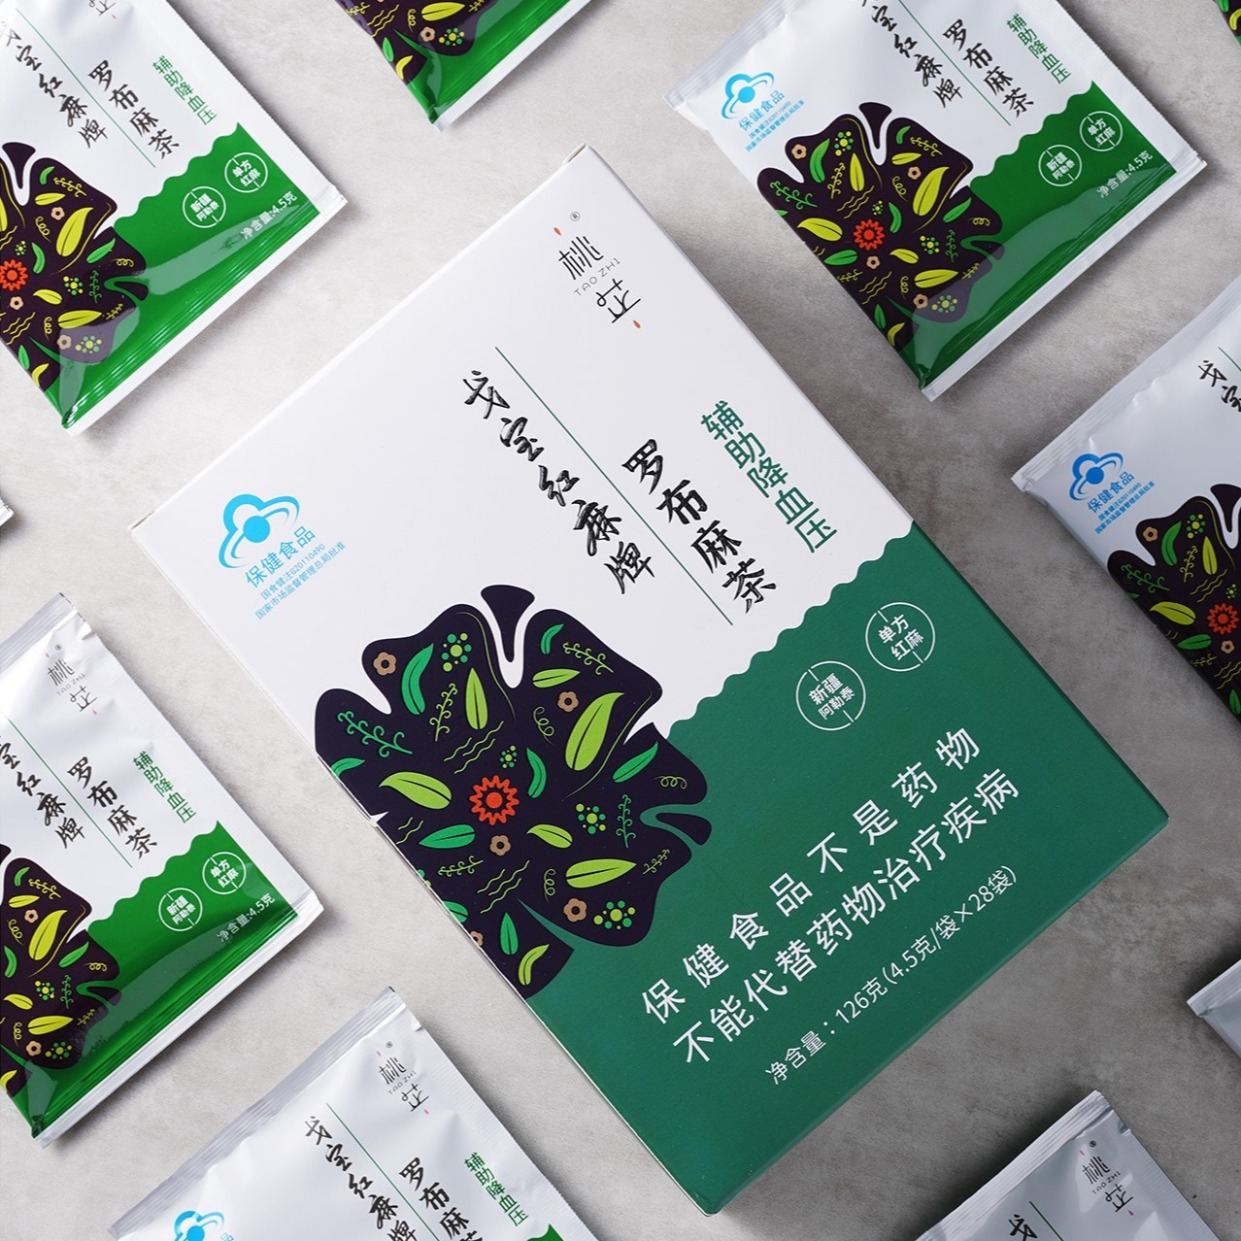 新疆阿勒泰特产桃芷罗布红麻茶126g/盒辅助降血压食品保健零添加